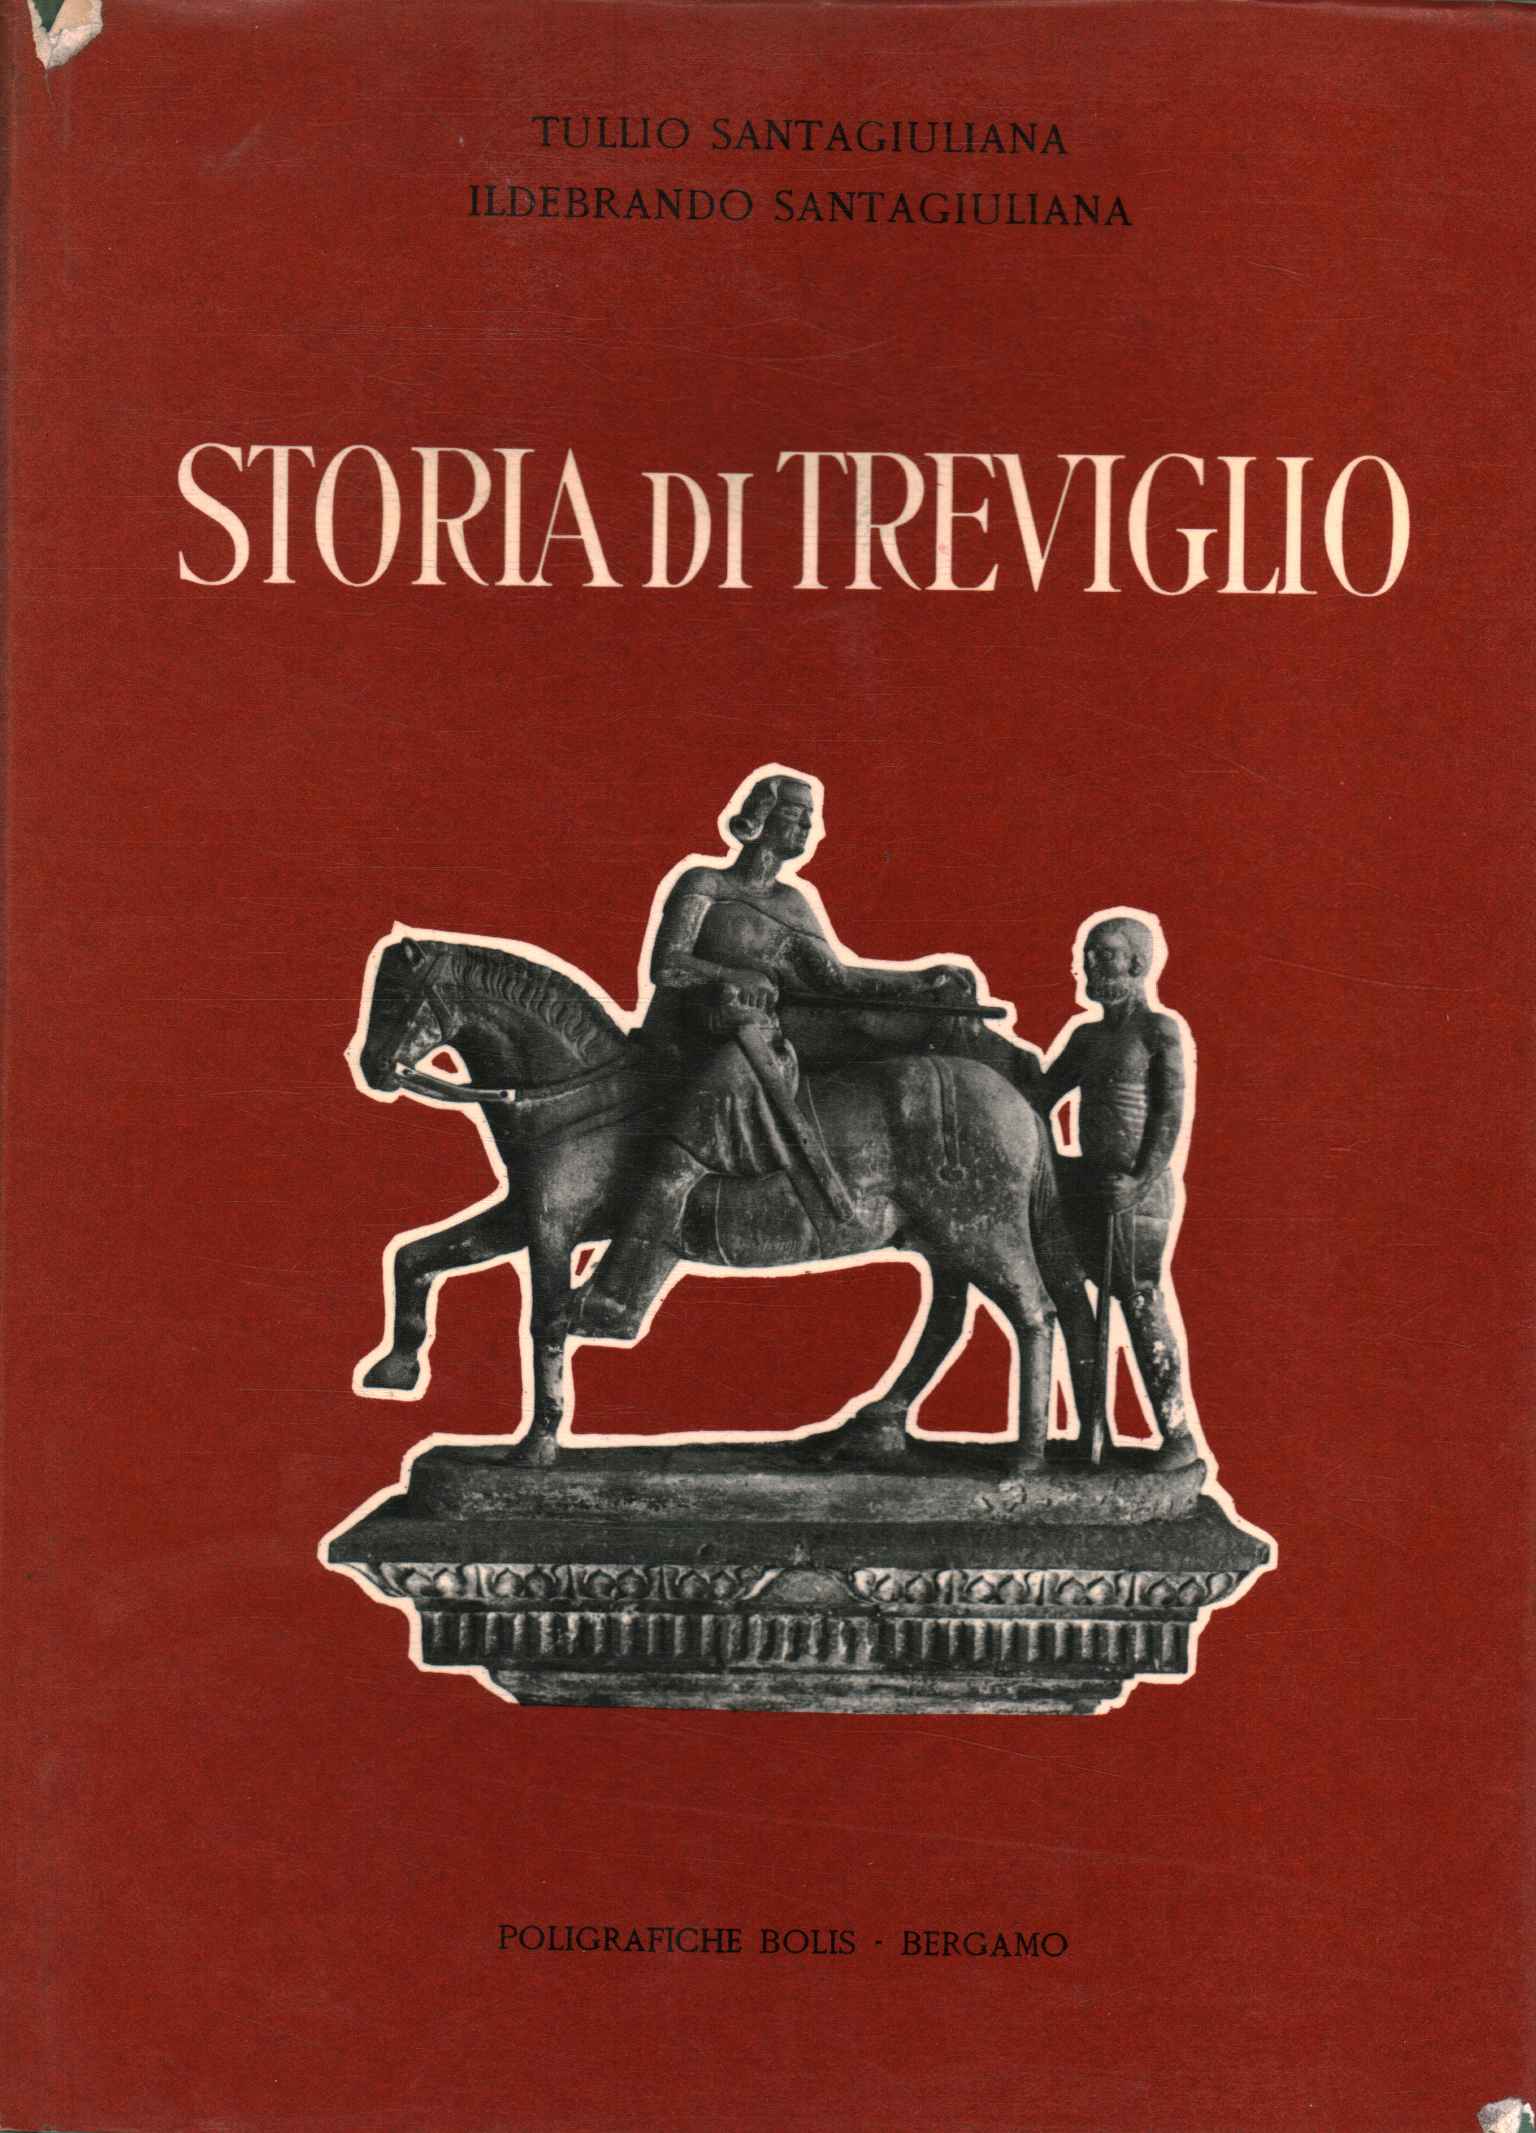 Geschichte von Treviglio